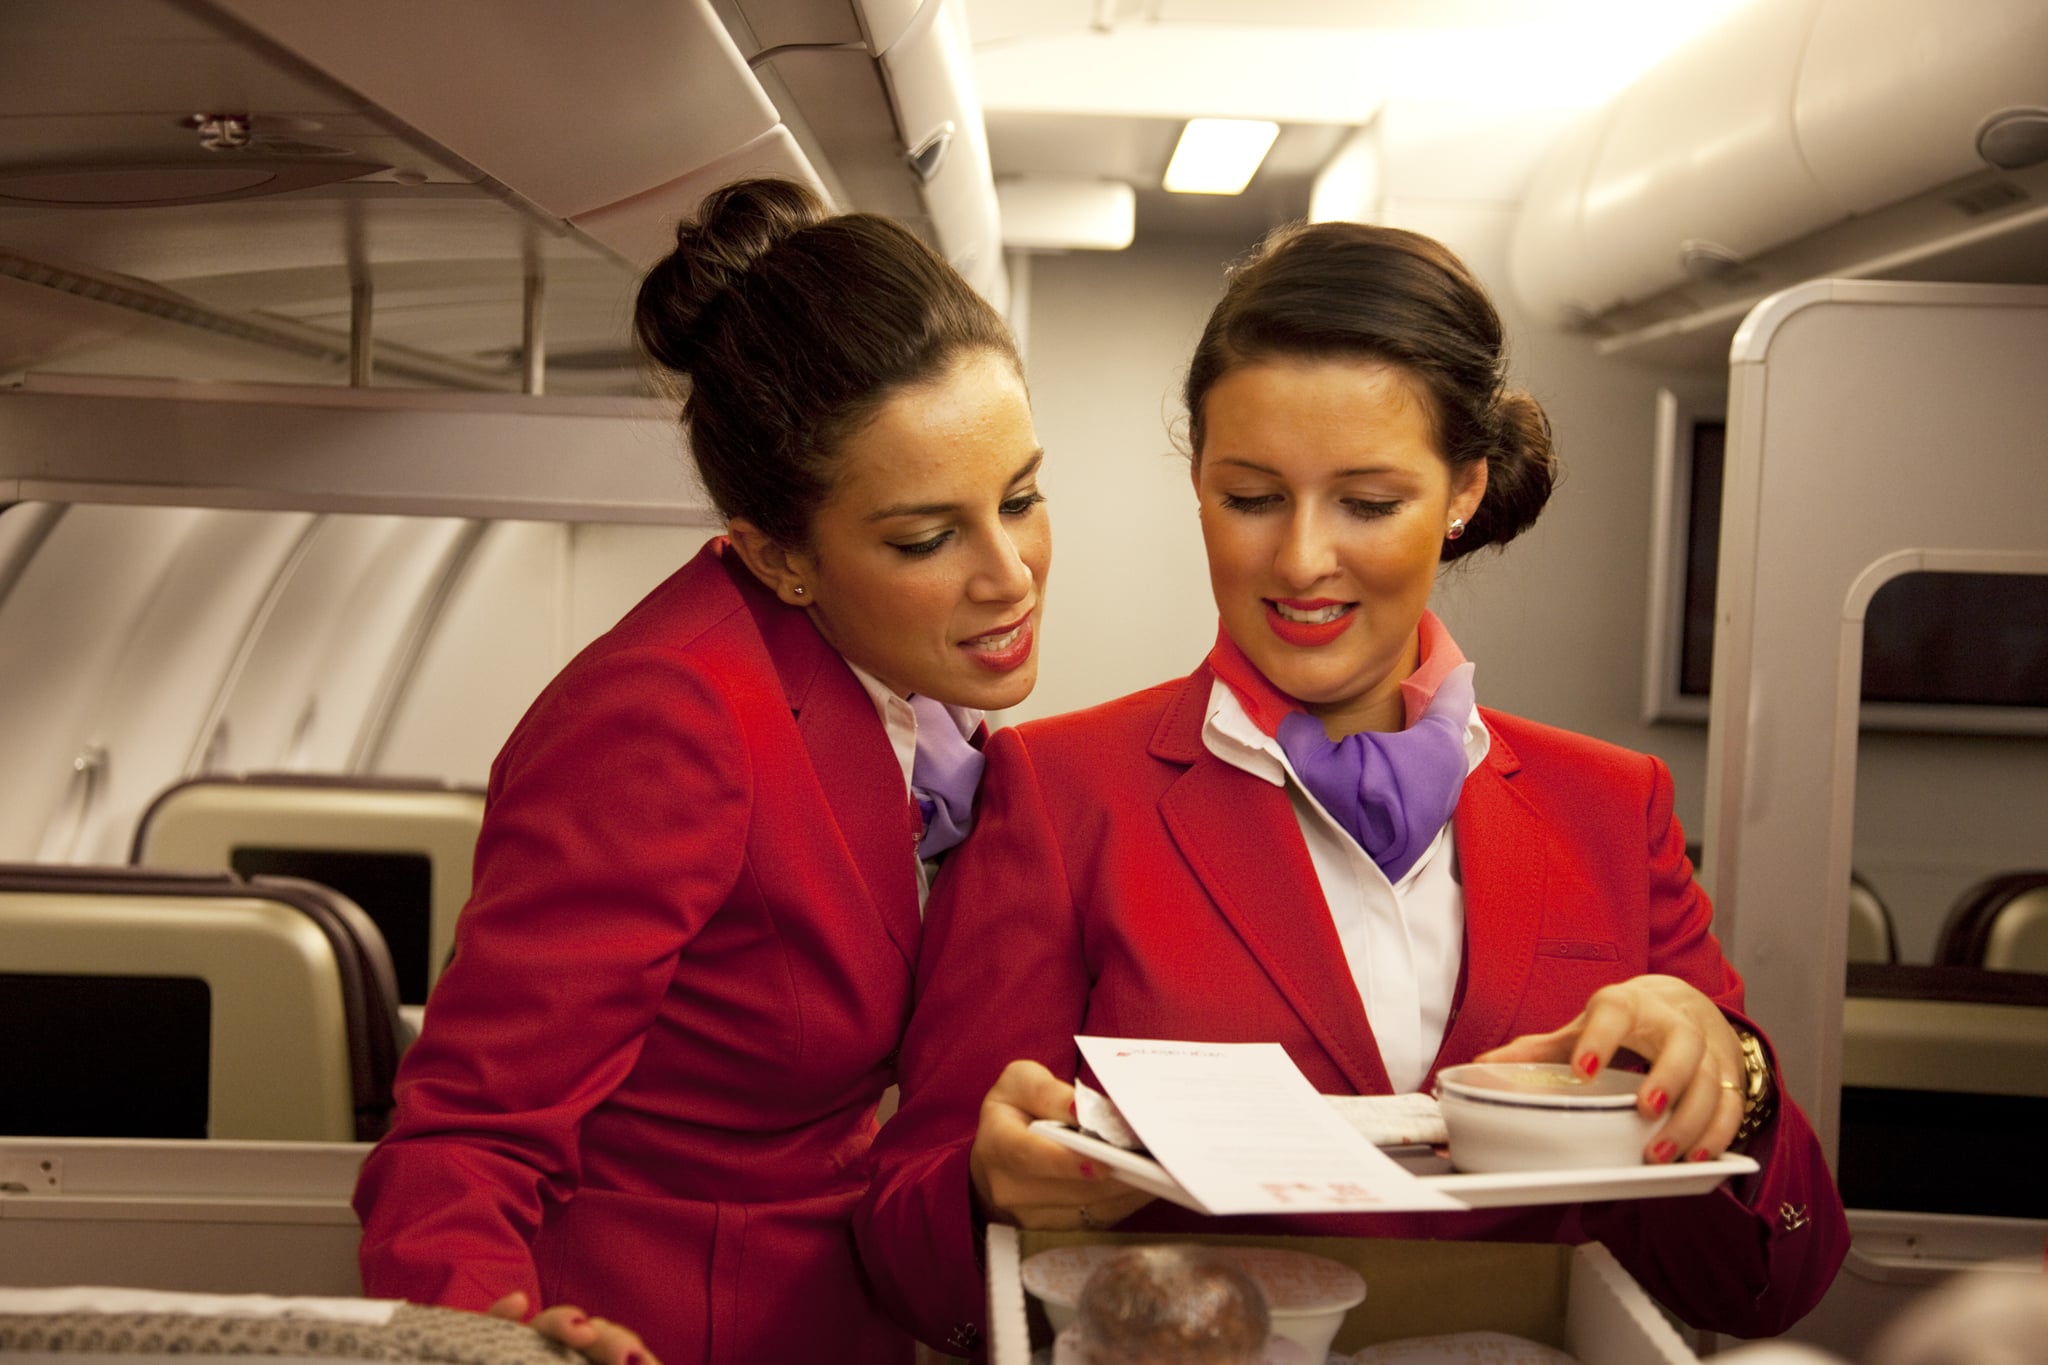 Virgin flights attendants